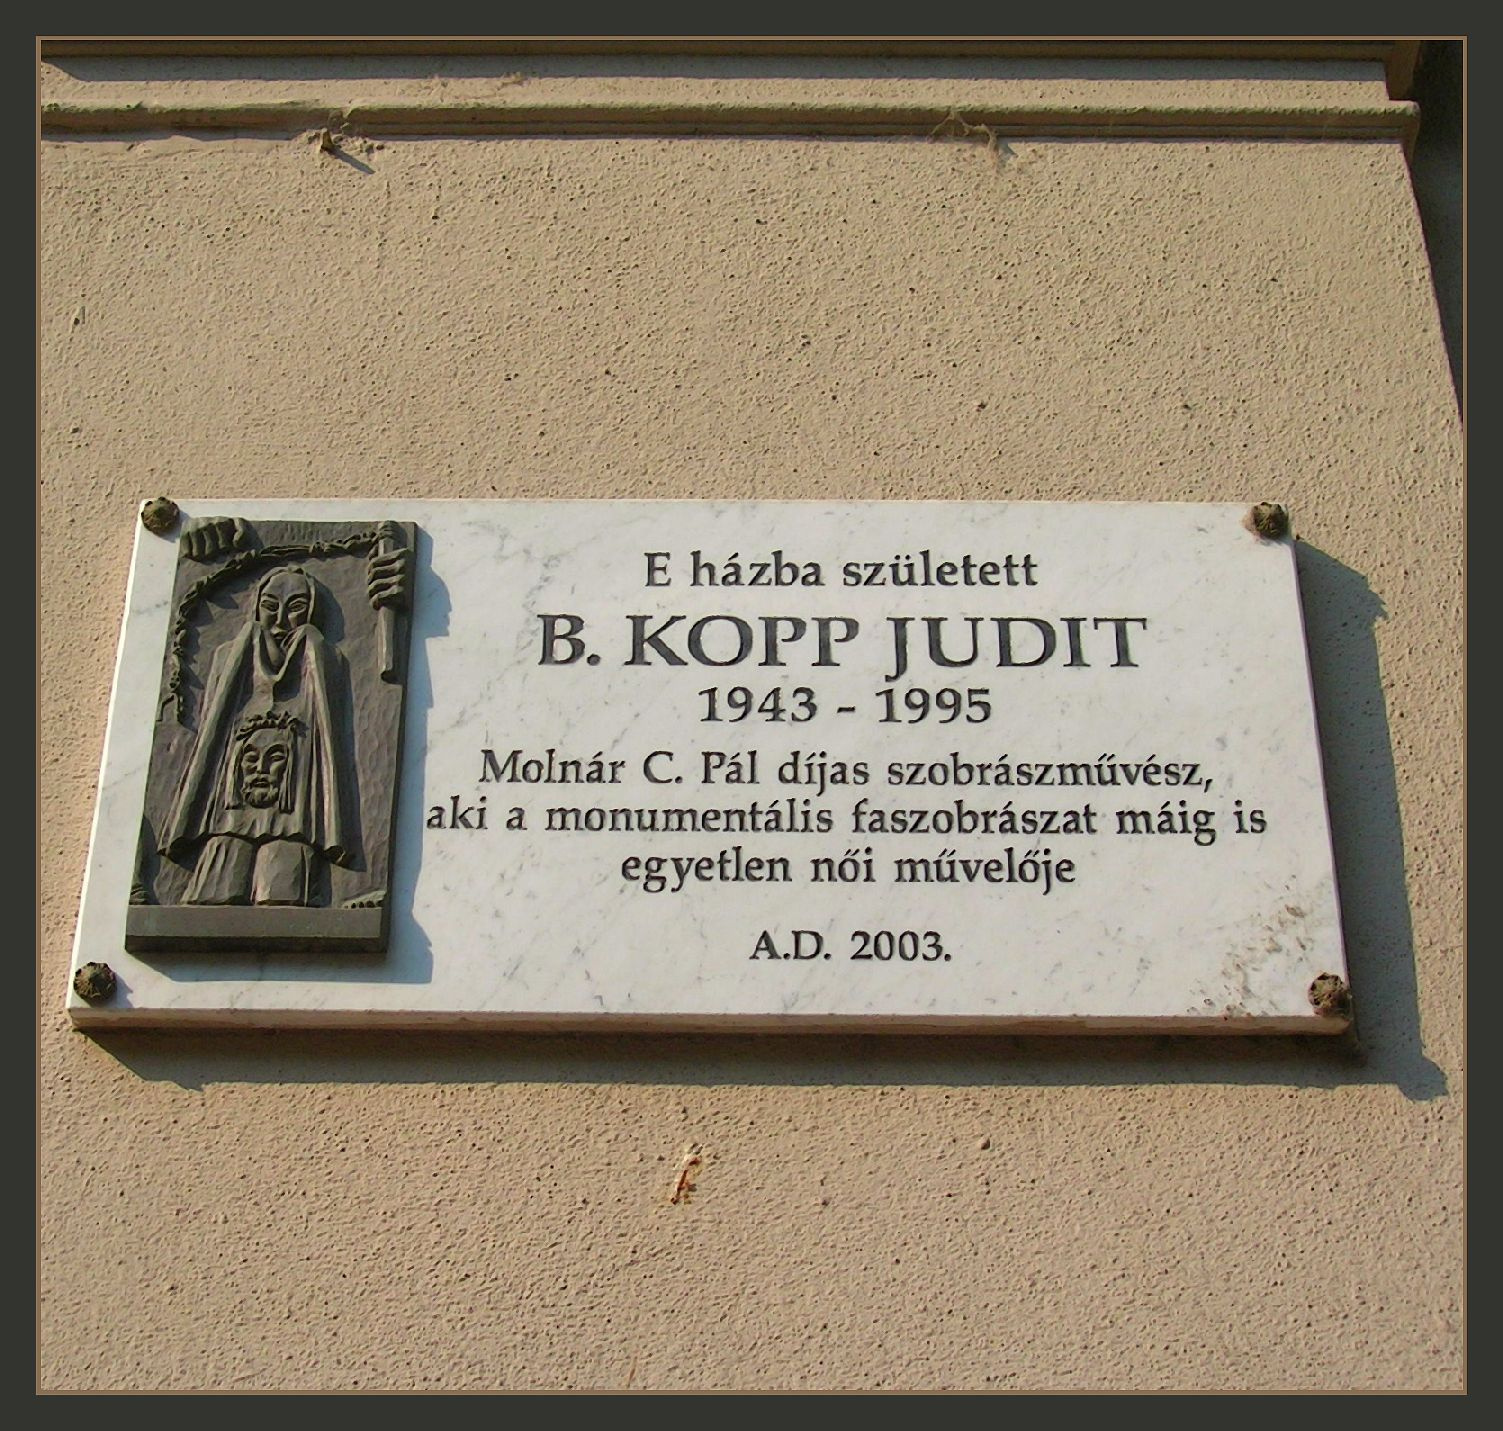 B. Kopp Judit